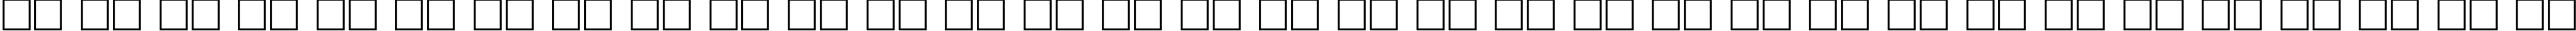 Пример написания русского алфавита шрифтом AGAalenBold Roman